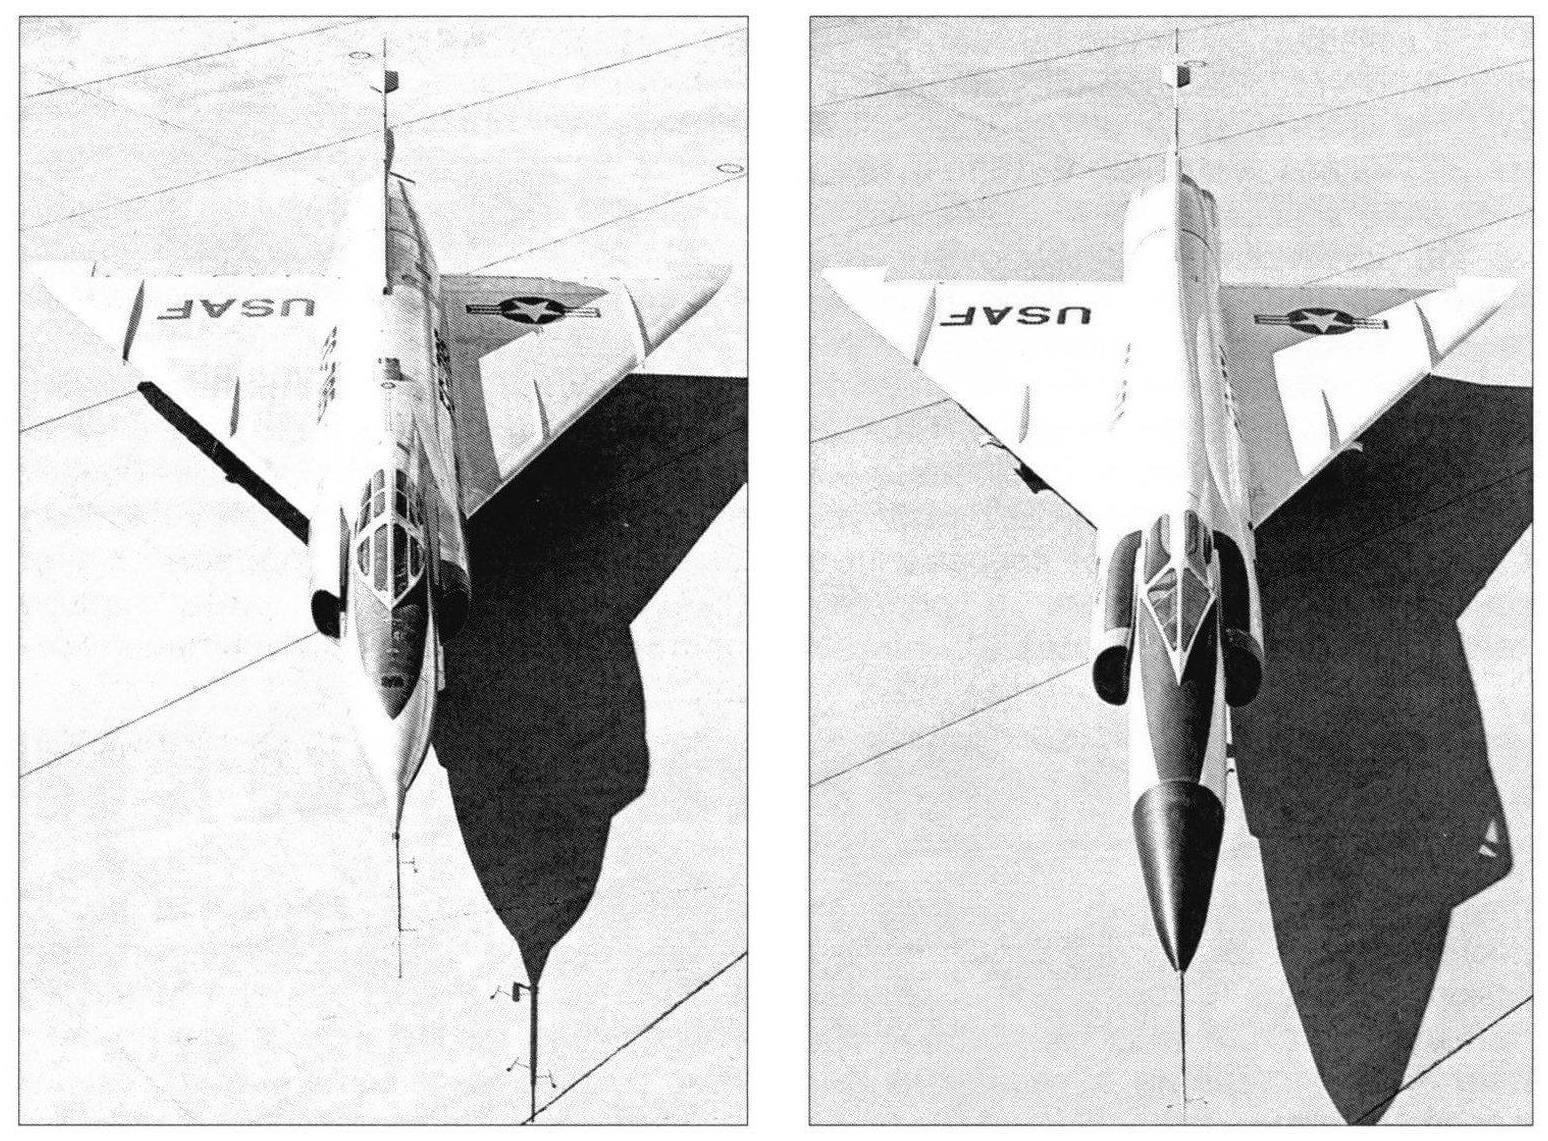 Слева - исходный YF-102, справа - кардинально переделанный в соответствии с правилом площадей самолет YF-102А. В районе крыла удлиненный фюзеляж получил «осиную талию», также удлинены воздуховоды, а кабина сужена